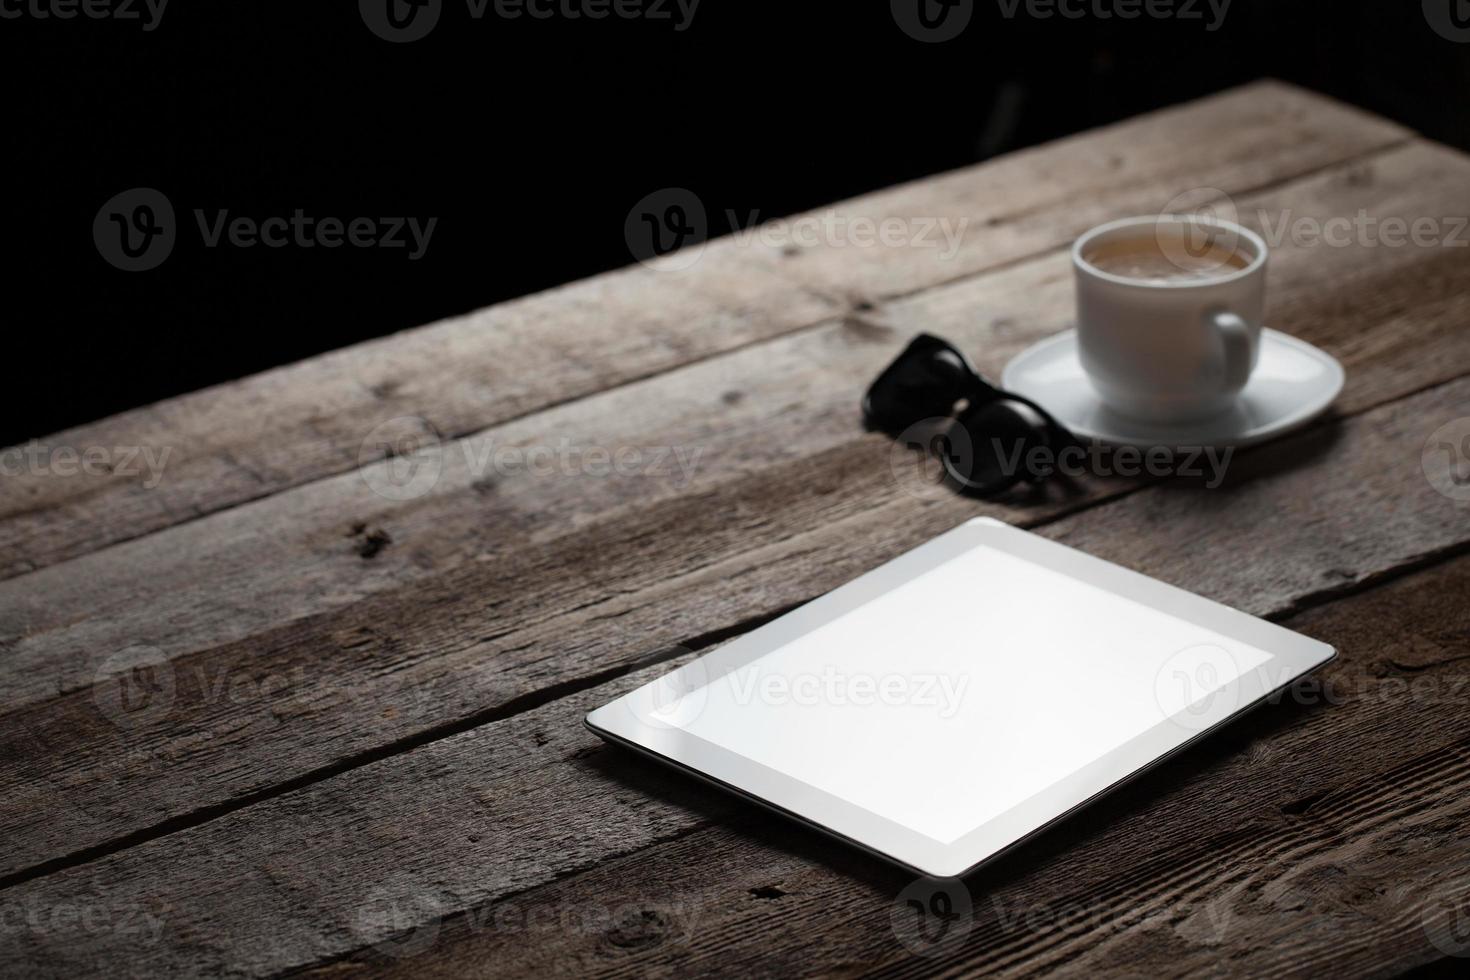 pantalla de tablet pc digital en mesa de madera foto